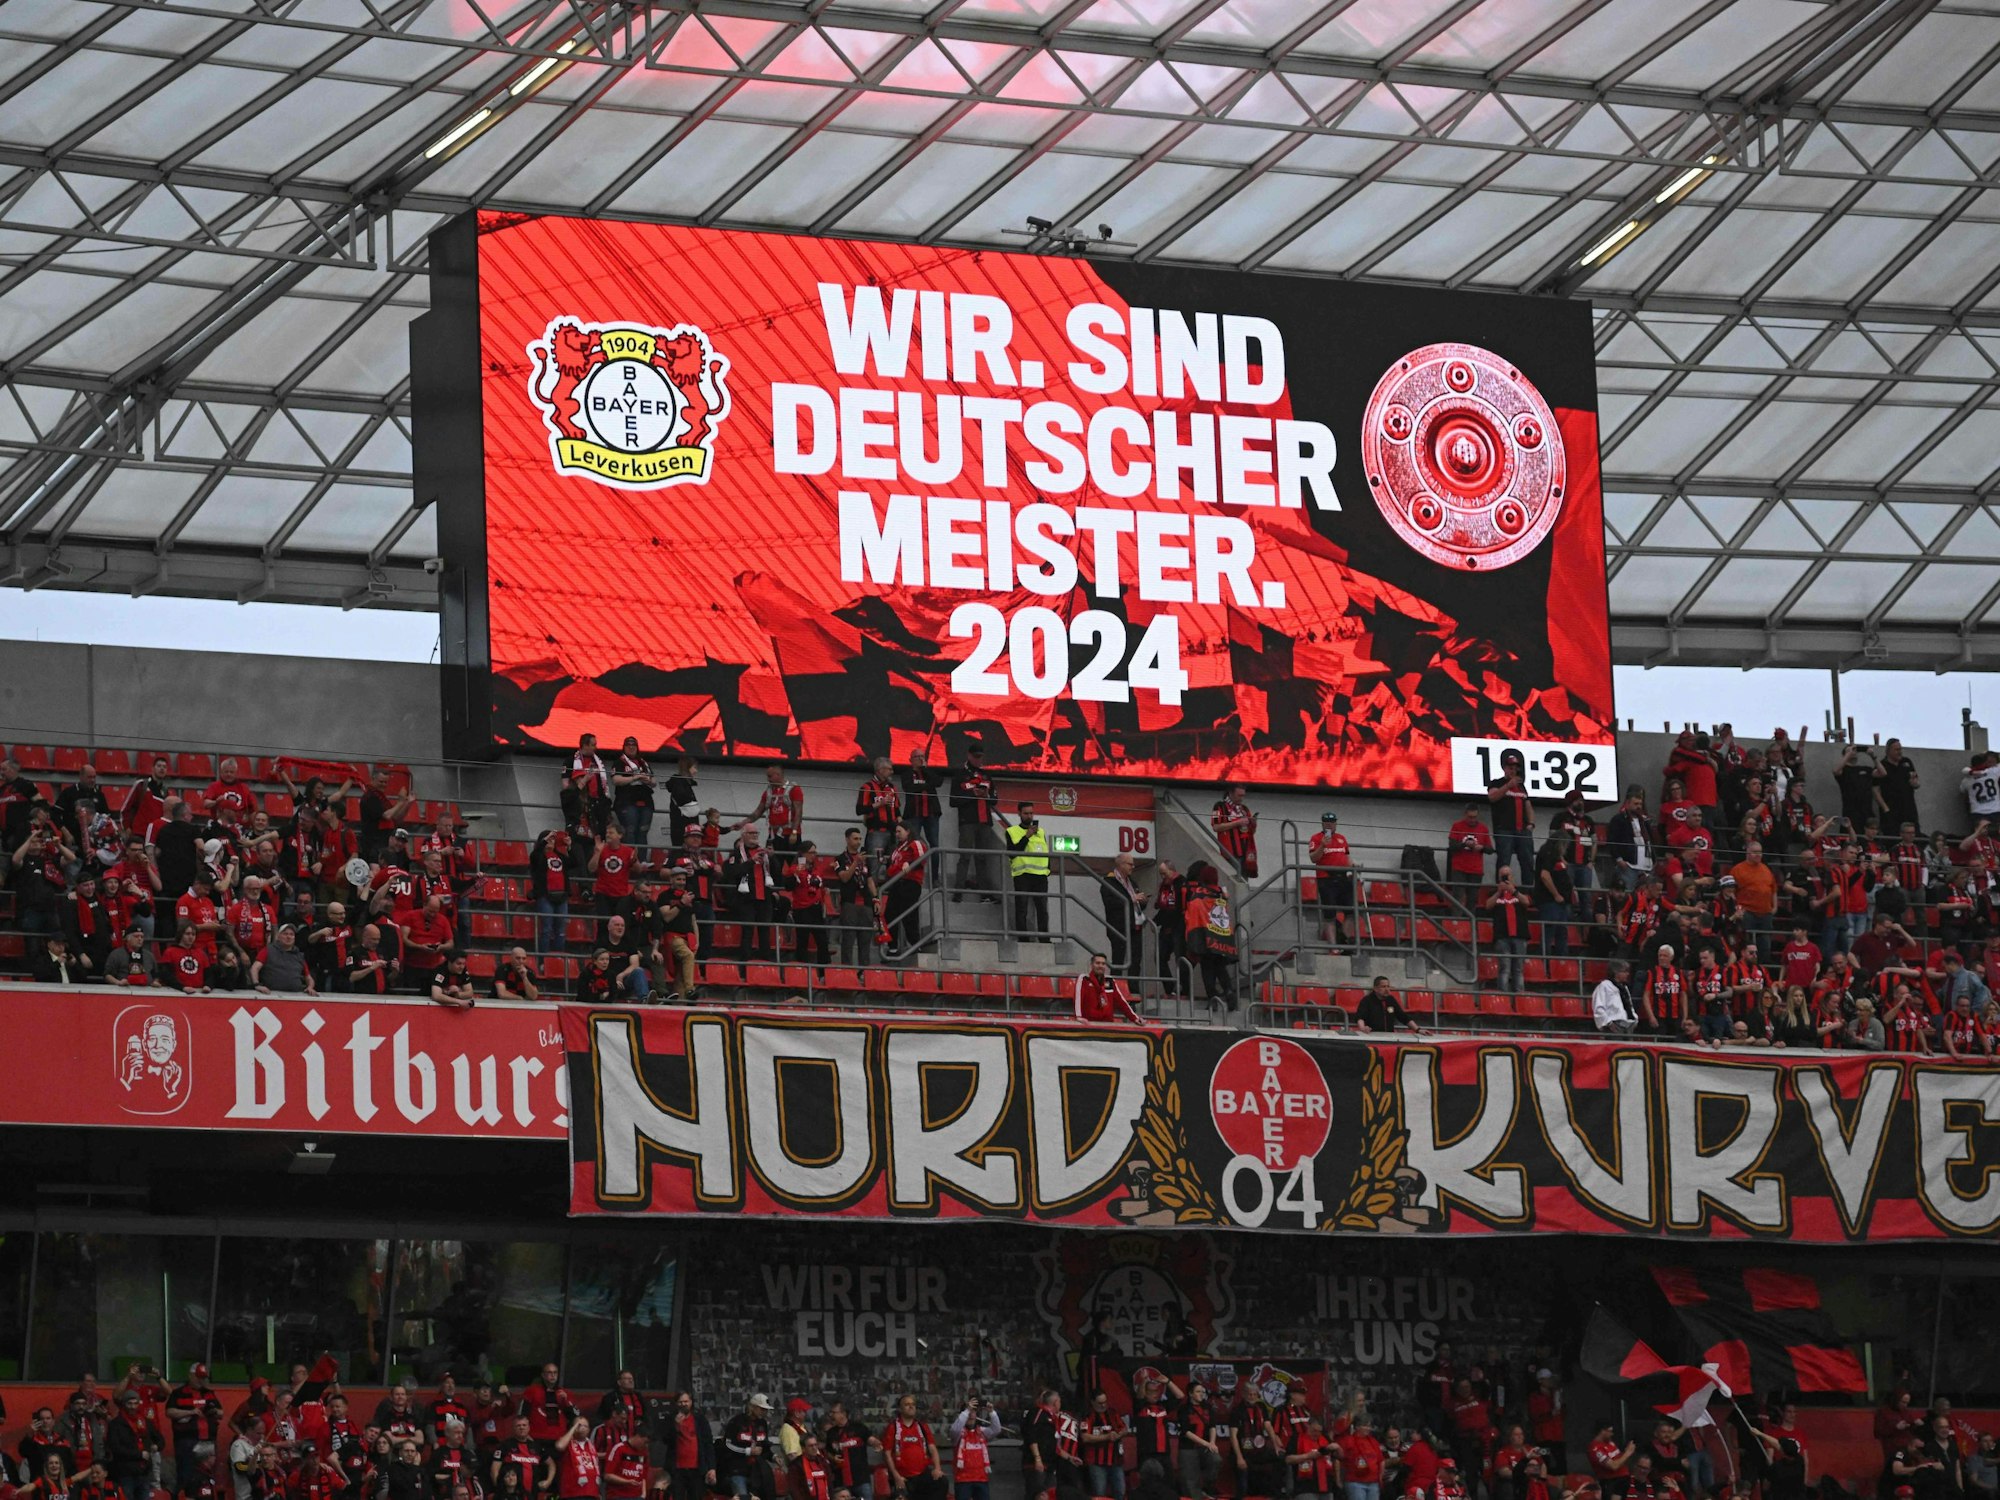 Auf der Stadionleinwand stand es dann Weiß auf Rot: „Wir. Sind Deutscher Meister. 2024“